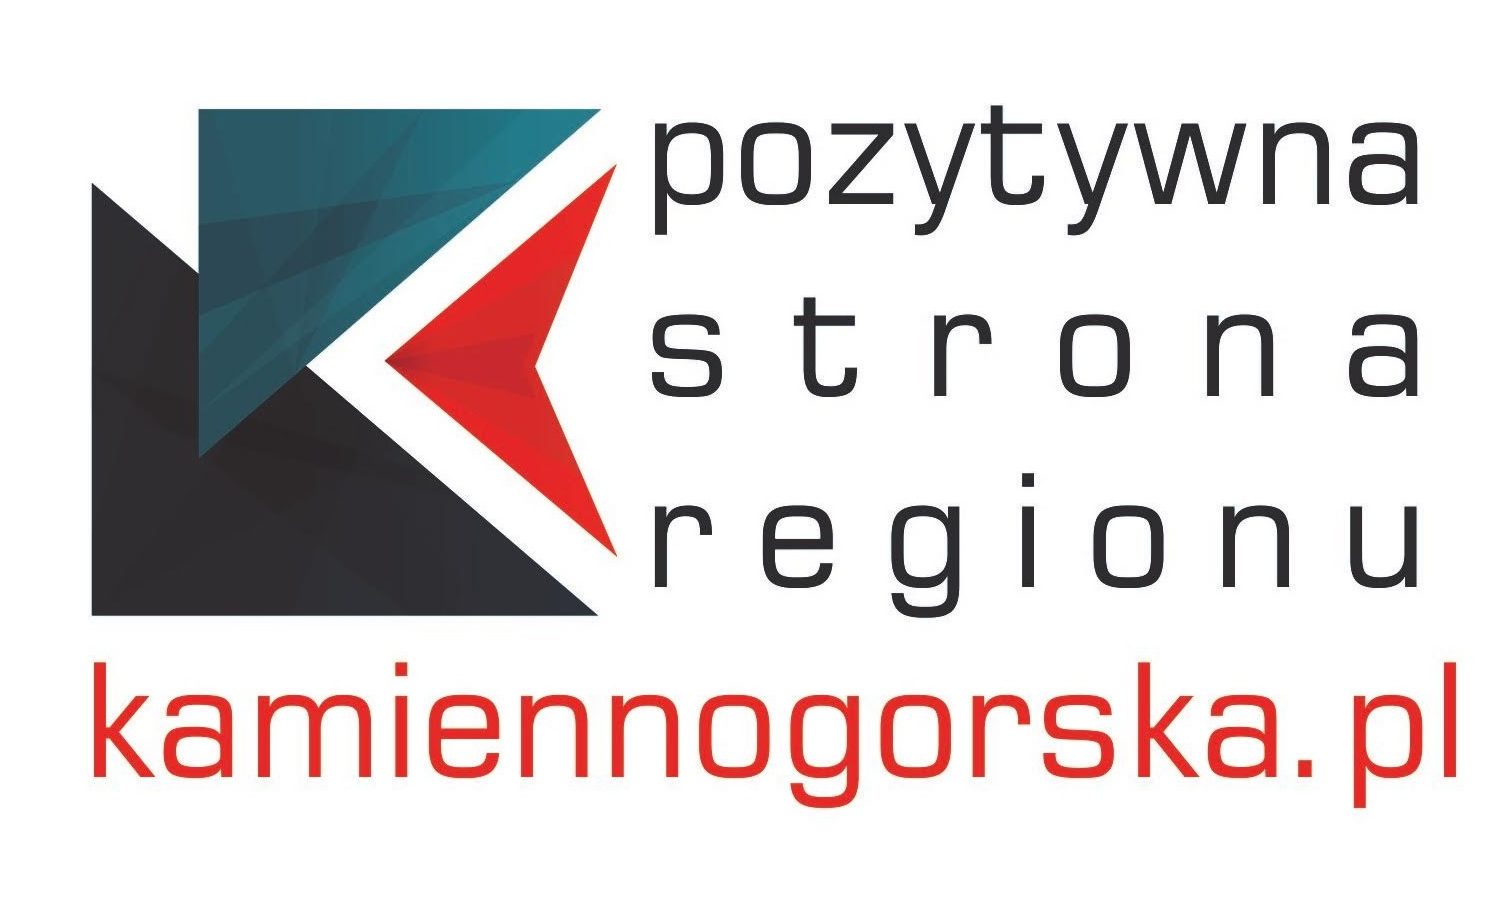 kamiennogorska.pl – pozytywna strona regionu